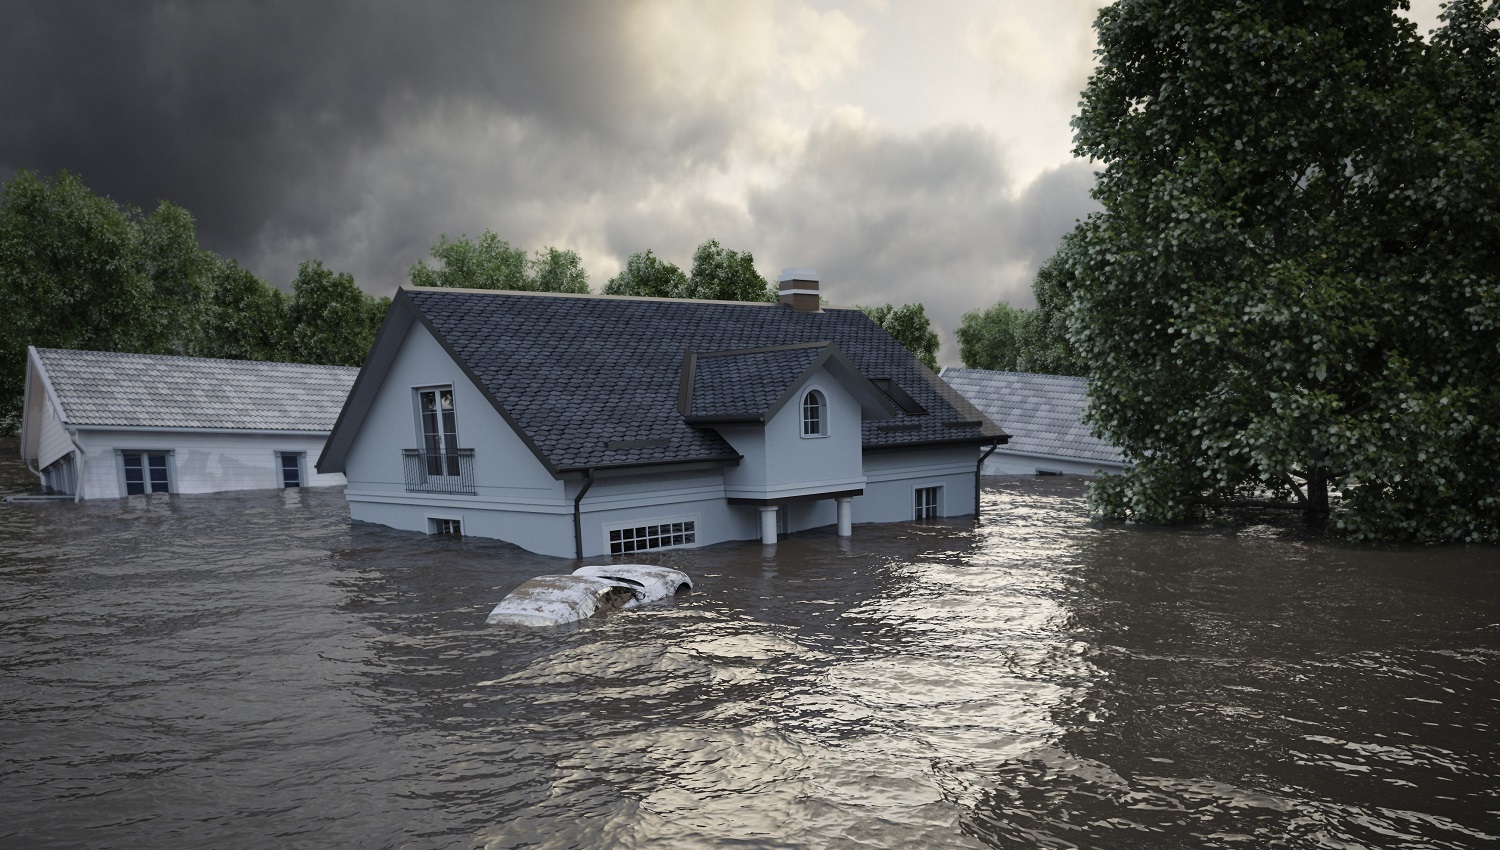 Quel type de système d’alerte doit être utilisé dans les zones inondables ?